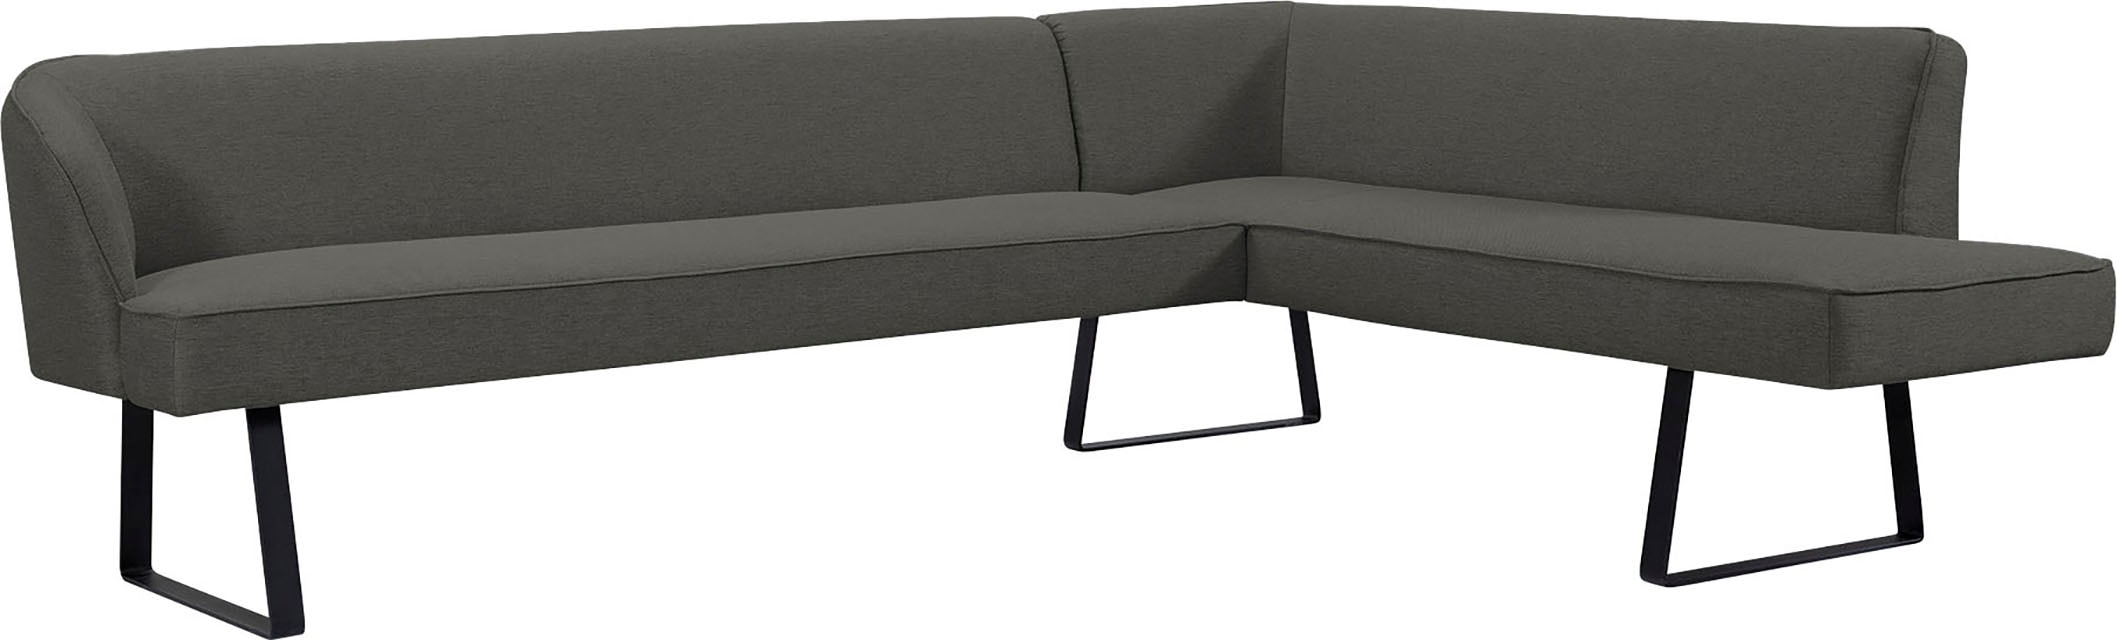 exxpo - sofa fashion Eckbank »Americano«, mit Keder und Metallfüßen, Bezug in verschiedenen Qualitäten